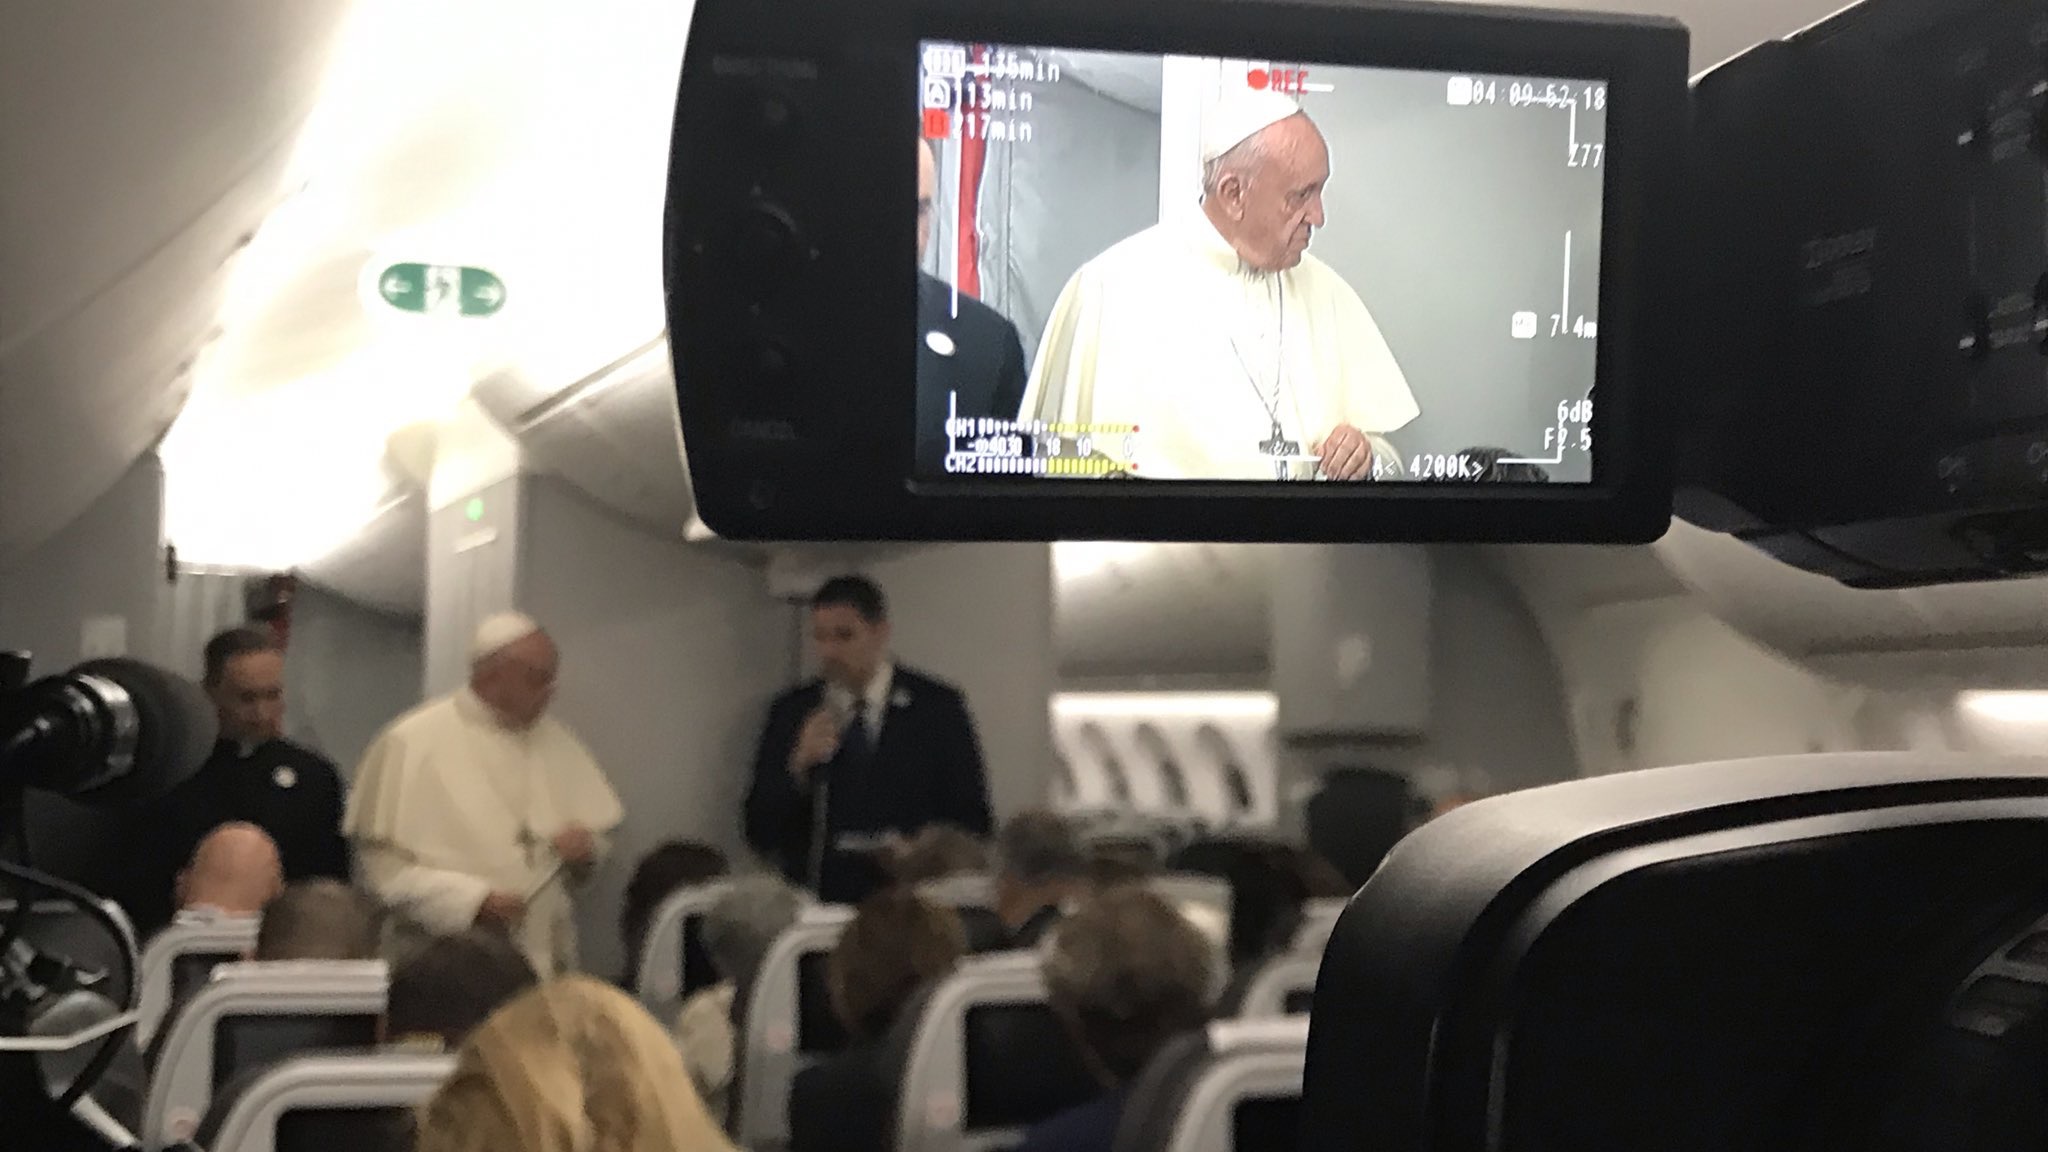 Le pape s’exprime dans l’avion sur certains sujets